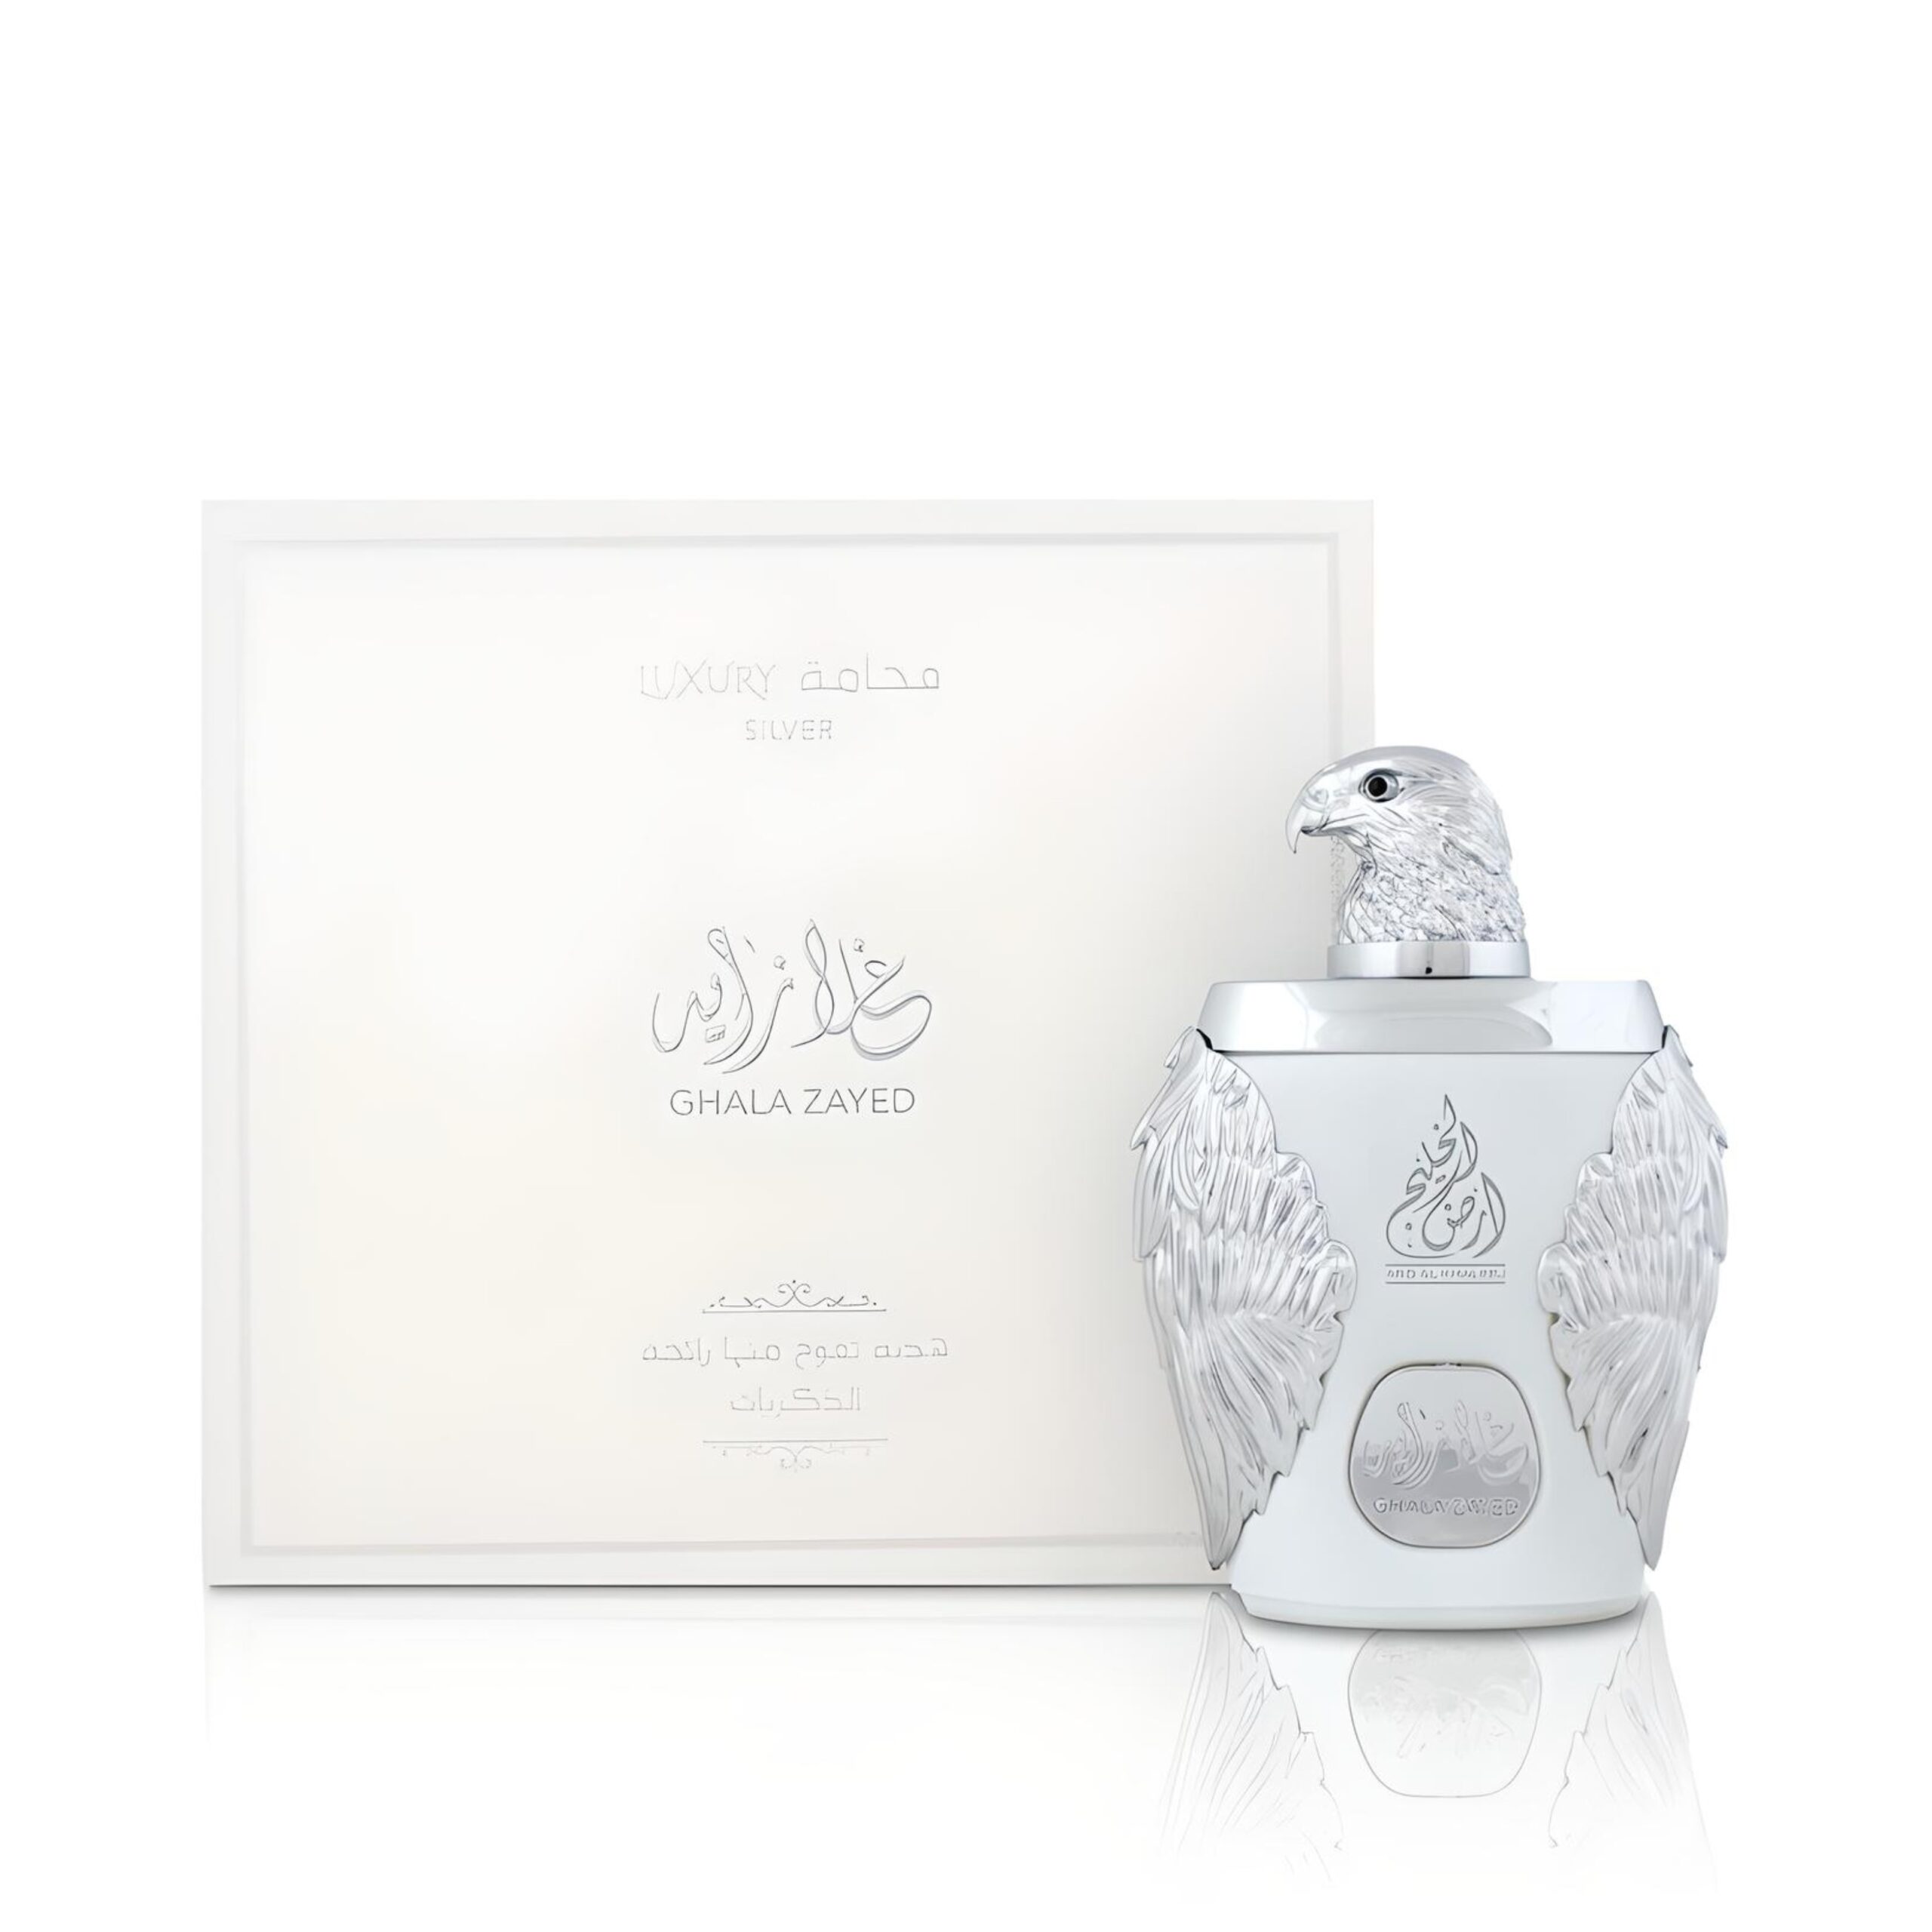 Ghala Zayed Luxury Silver Perfume / Eau De Parfum 100Ml By Ard Al Khaleej